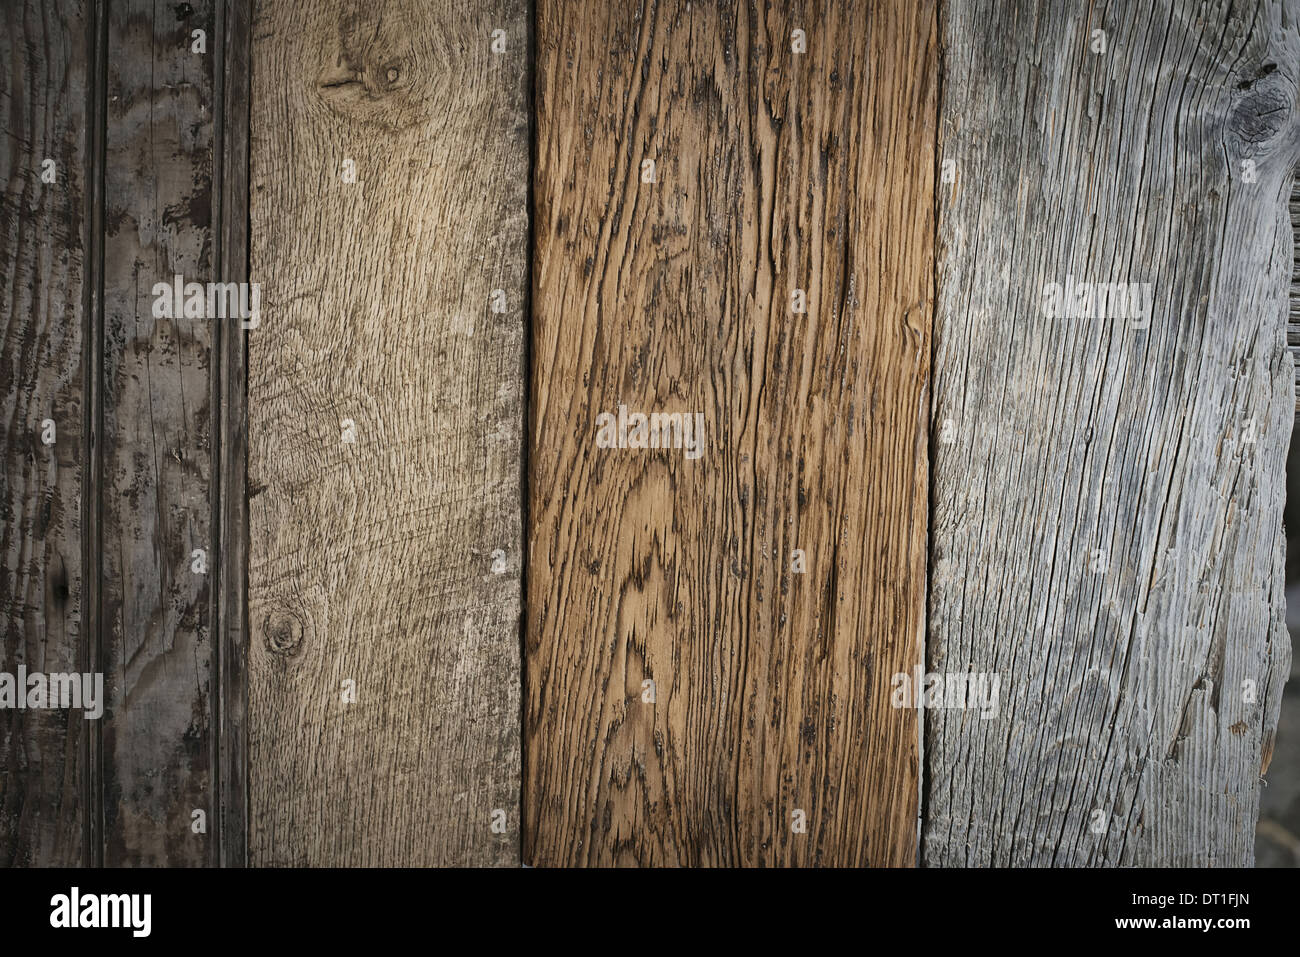 Ein Haufen von recycelten aufgearbeiteten Holzbohlen Holz ökologisch verantwortliche Holzarten mit Maserung und Farbe details Stockfoto